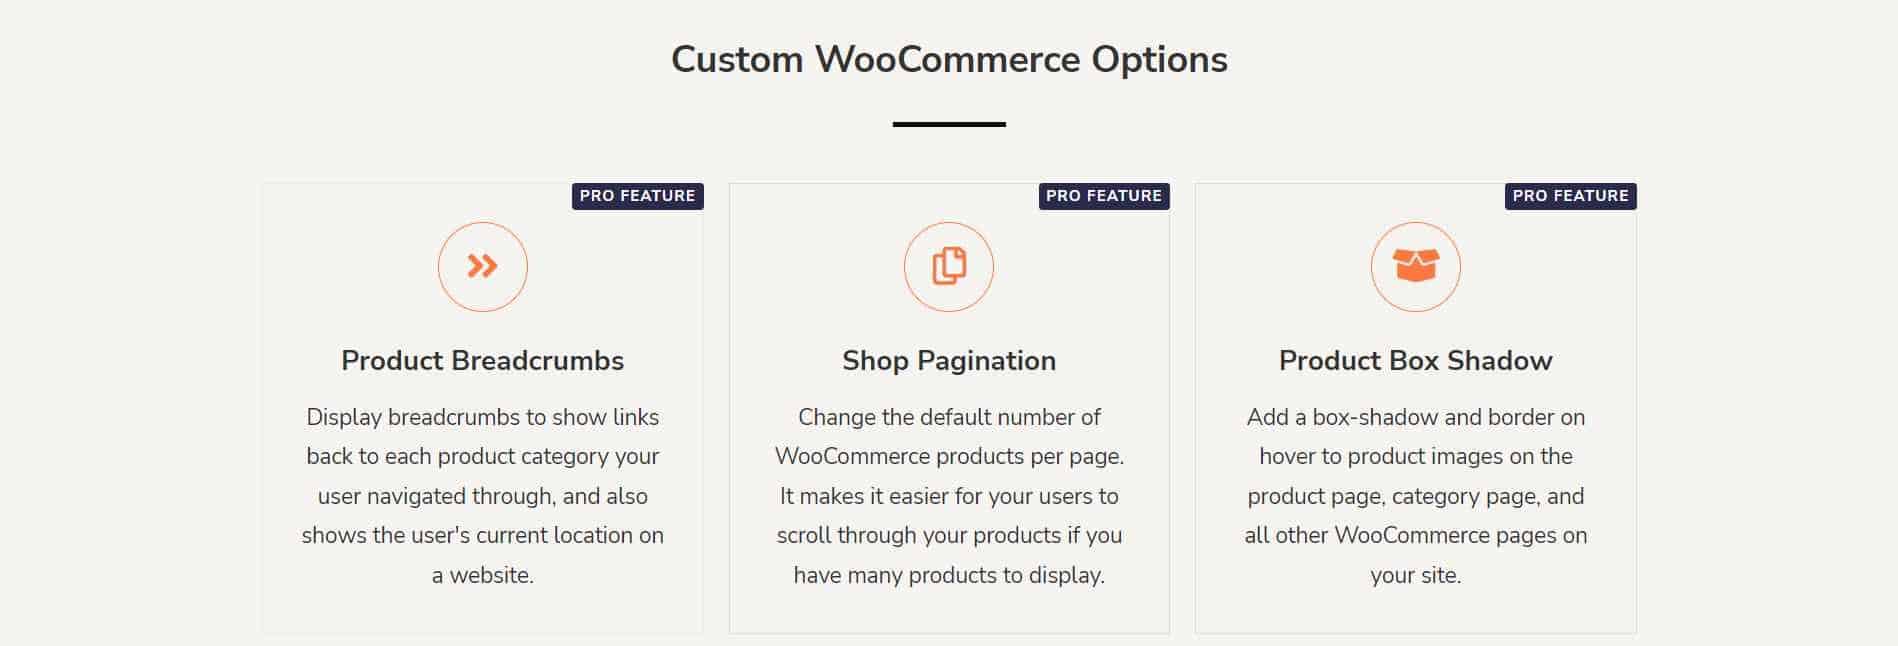 Custom WooCommerce Options